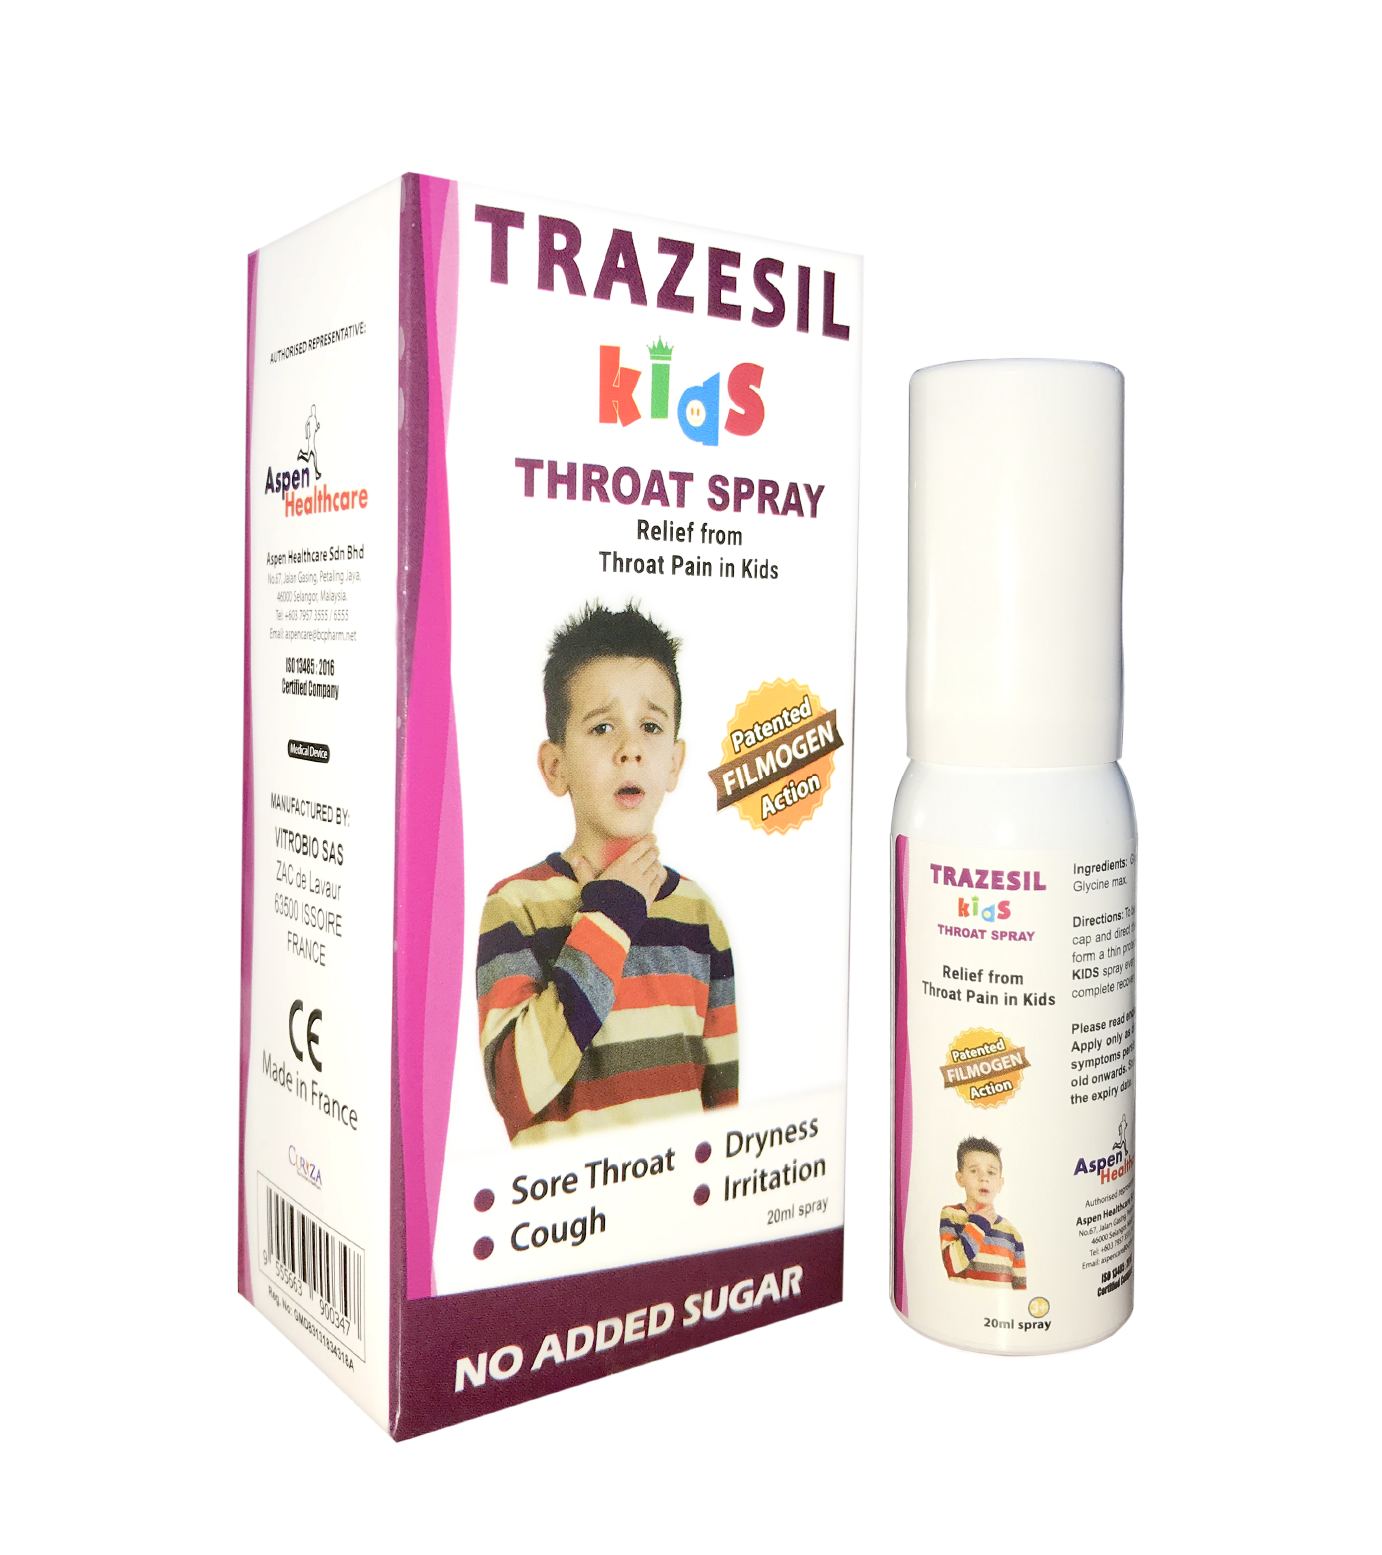 TRAZESIL KIDS THROAT SPRAY 20ml